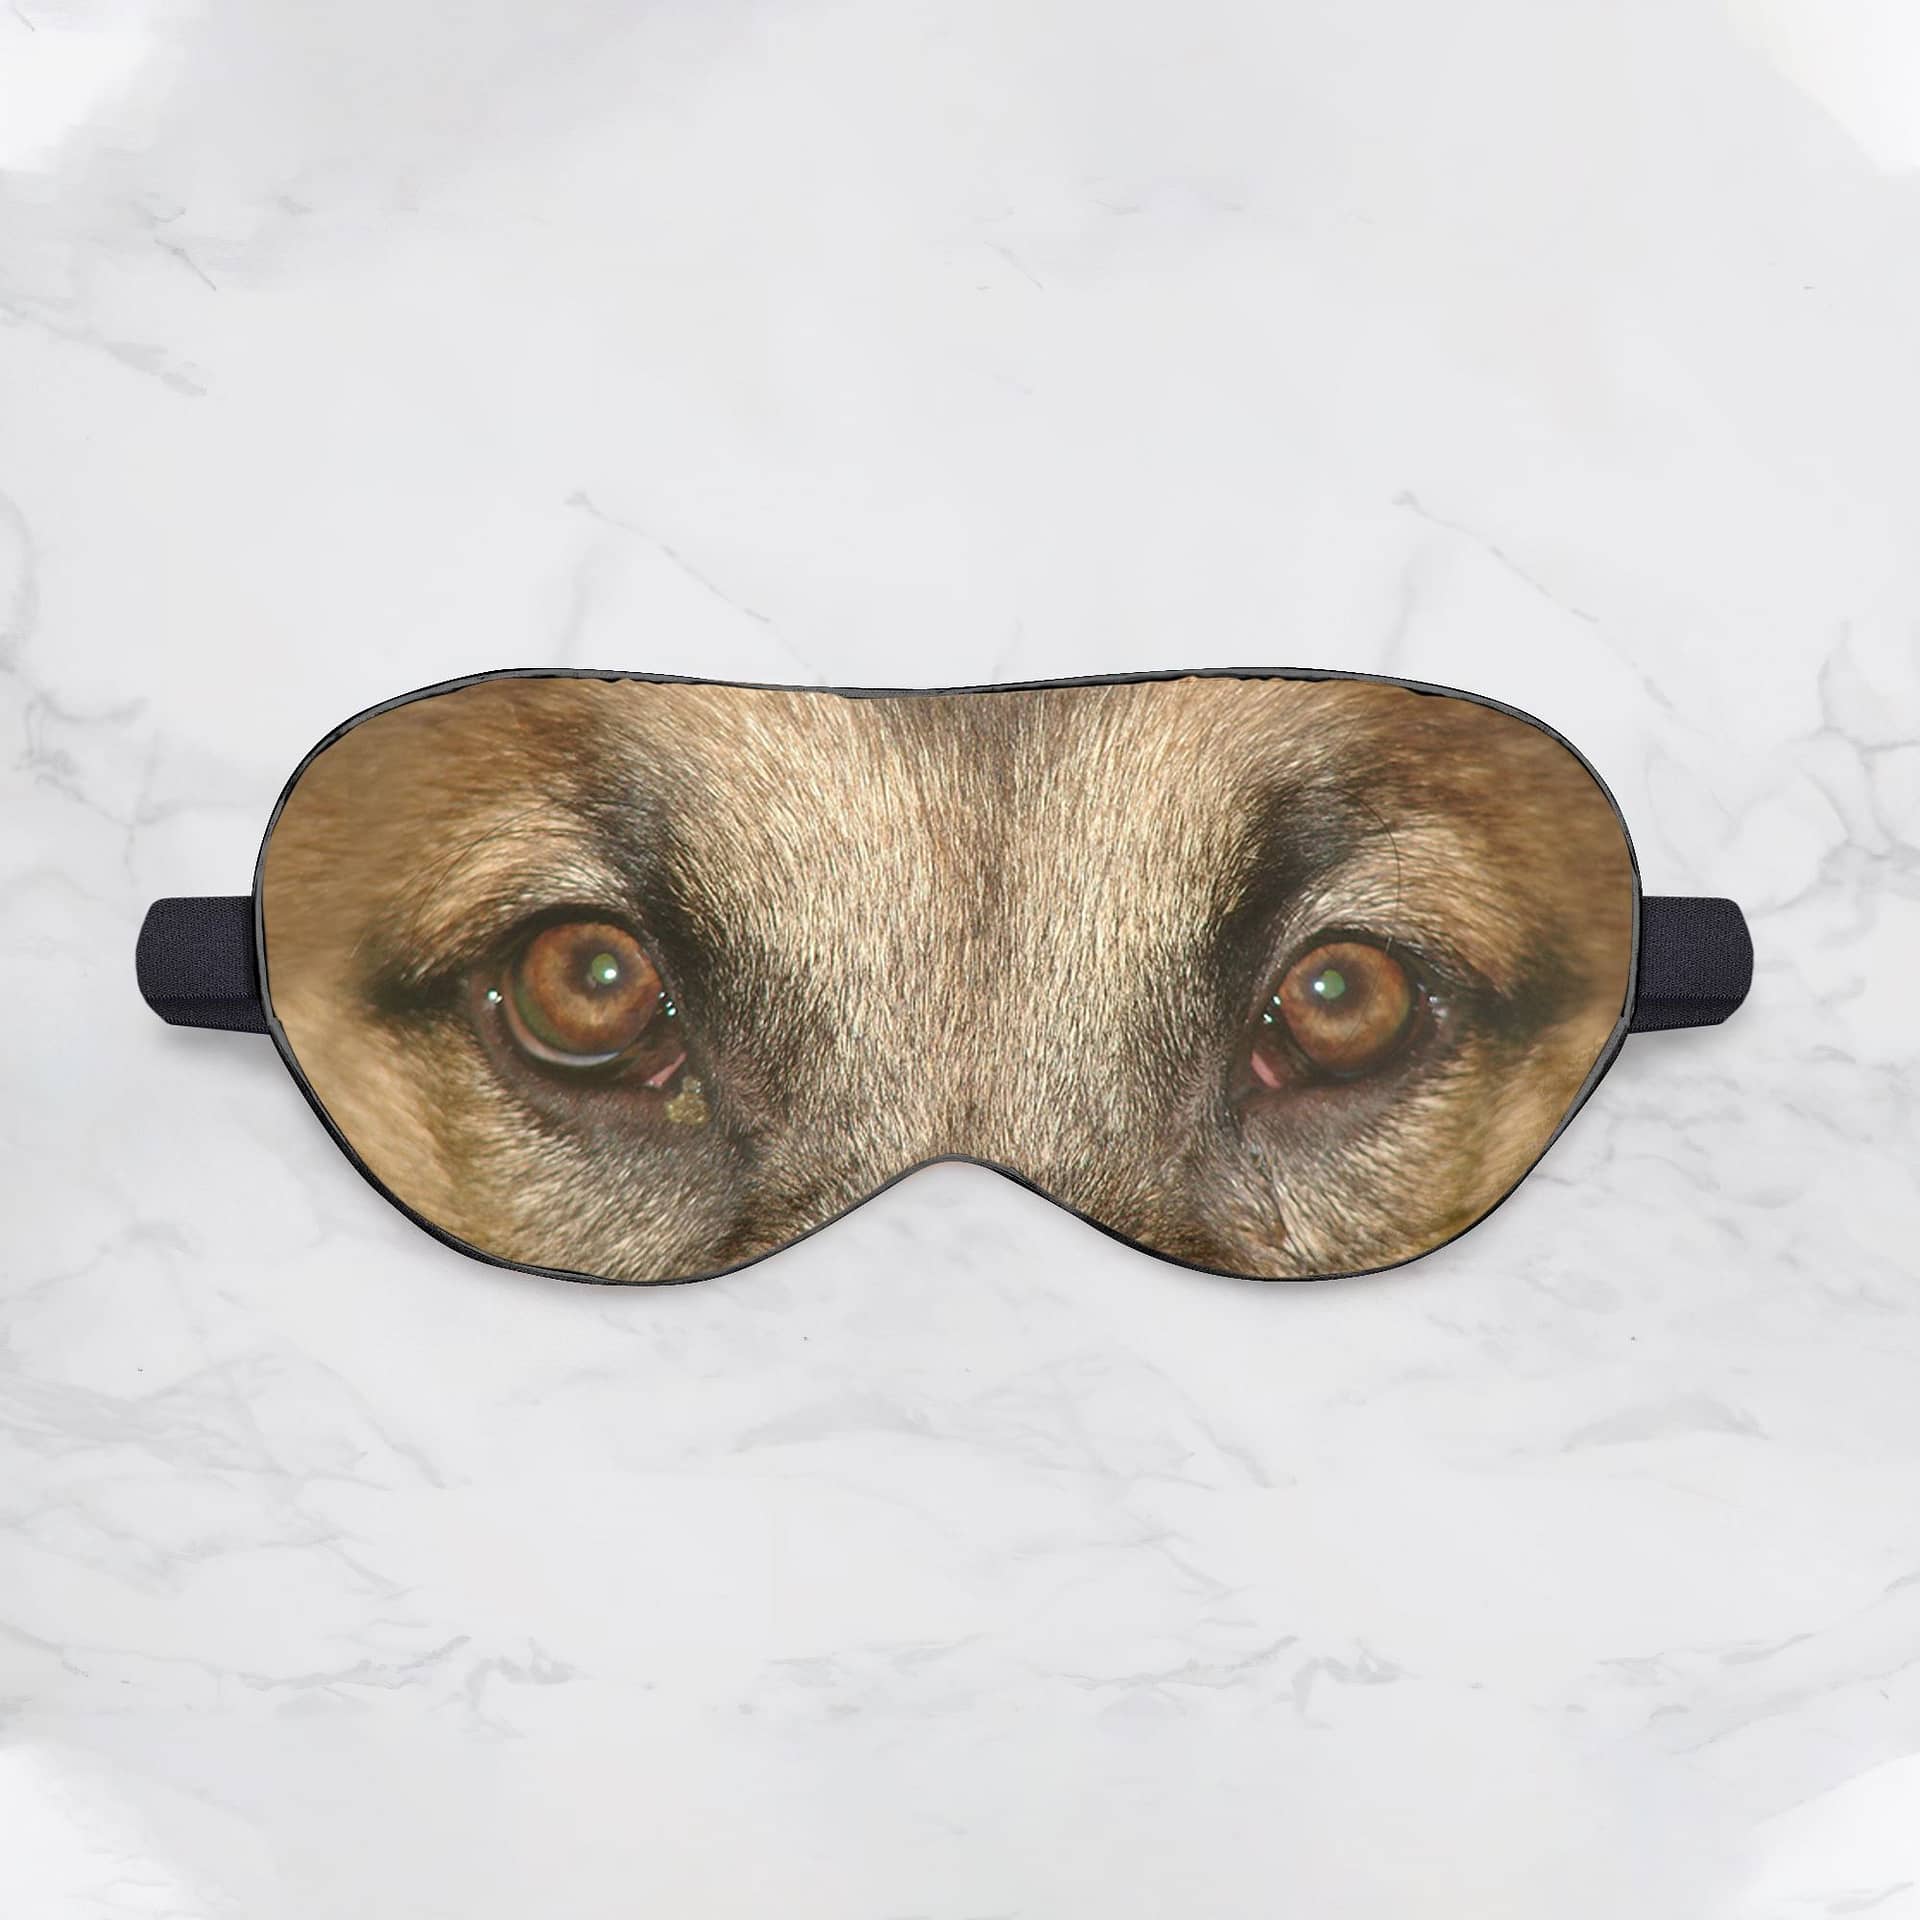 Inktee Store - German Shepherd Sleep Mask Image